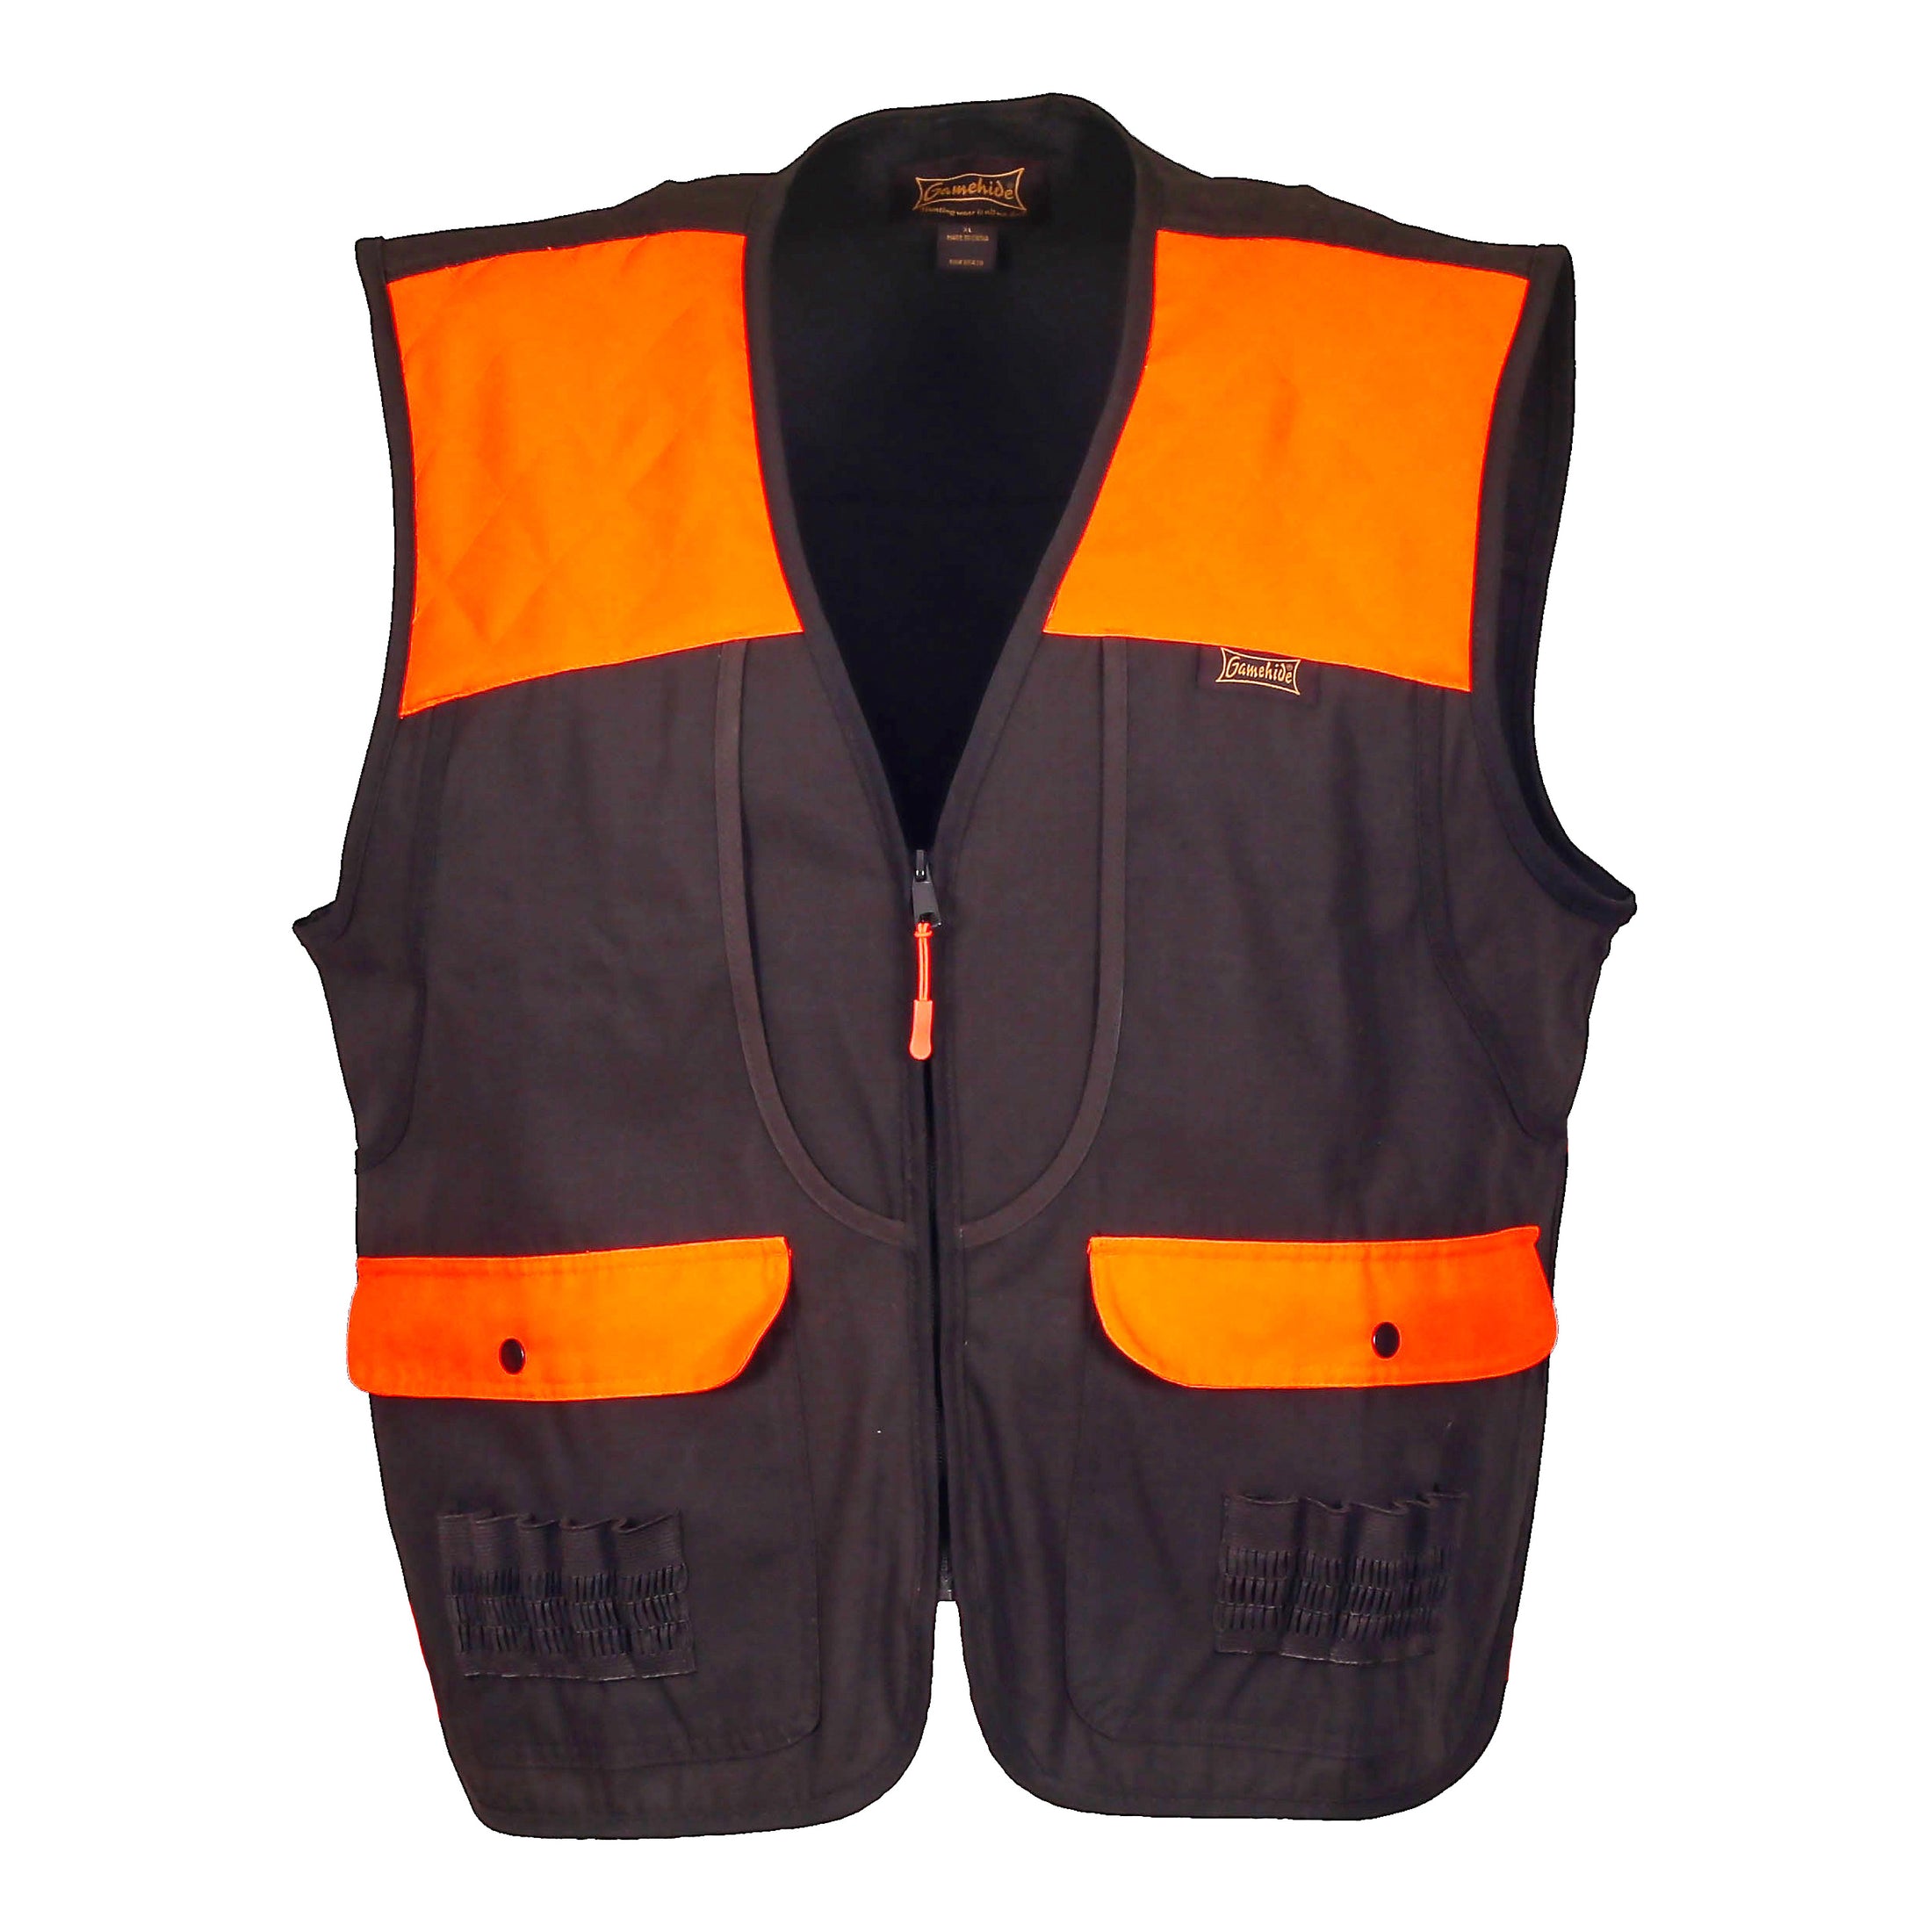 gamehide shelterbelt vest front view (dark brown/blaze orange)